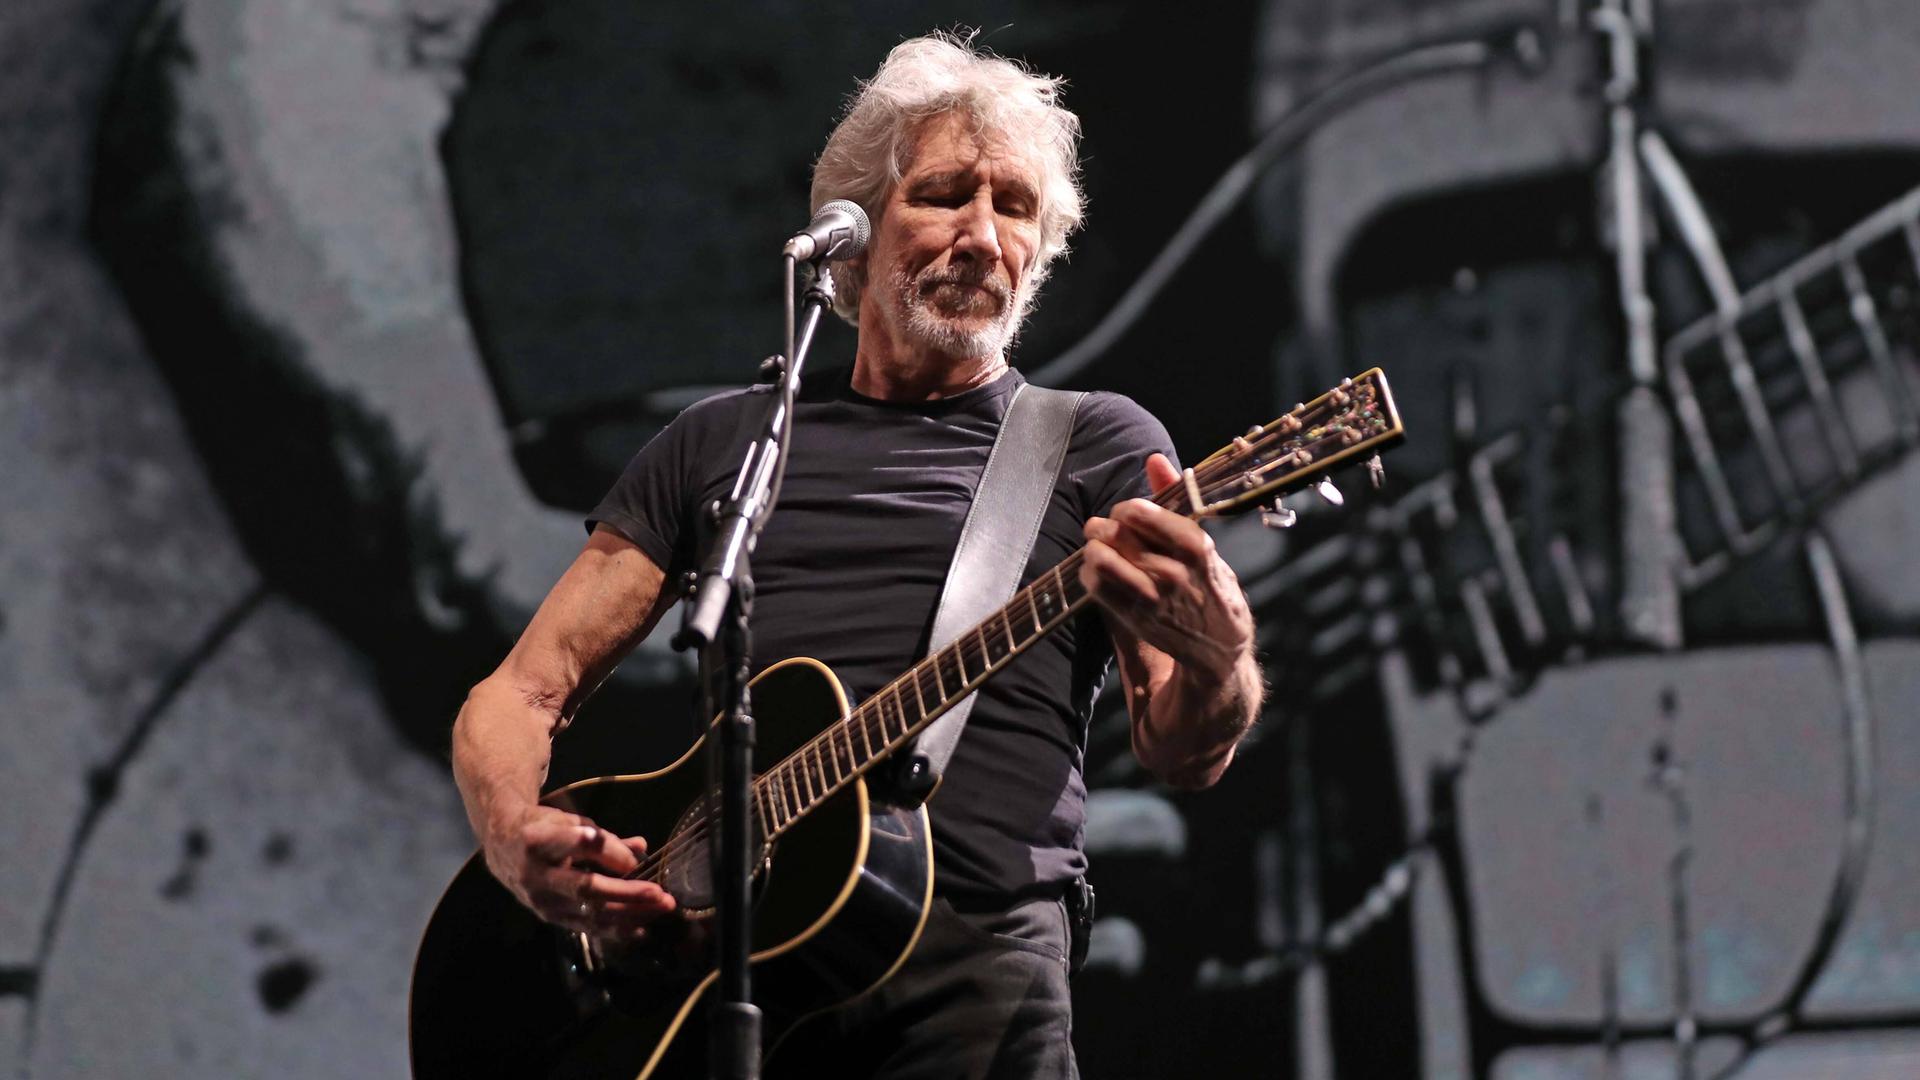 Der Pink Floyd-Mitgründer Roger Waters 2020 bei einem Konzert in Mexiko: Er steht auf einer abgedunkelten Bühne hinter einem Mikrofon und spielt eine akustische Gitarre.